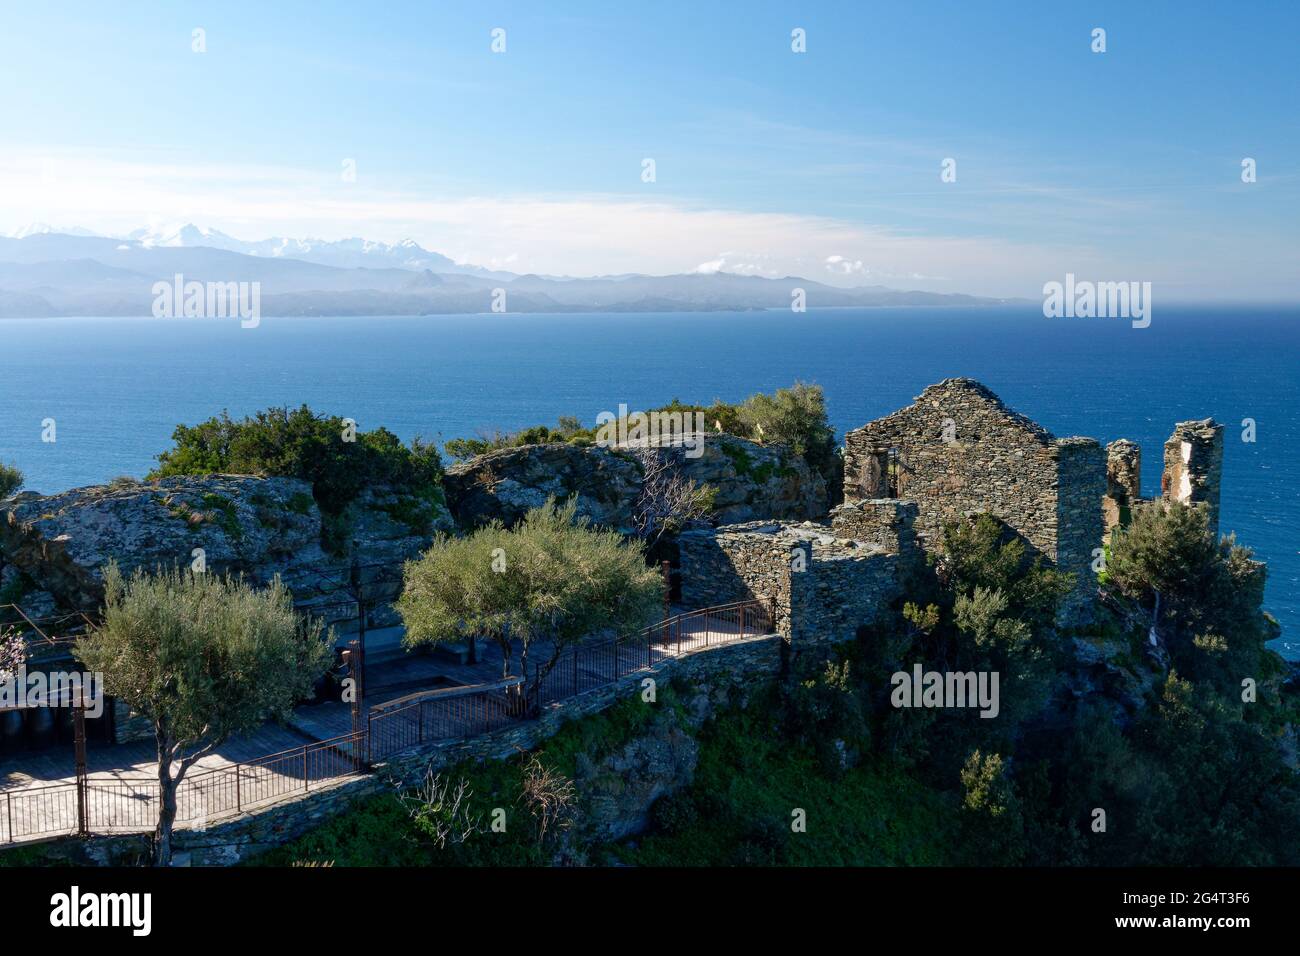 Ruines dans le village de Nonza avec le Monte Cinto en arrière-plan, Cap Corse en Corse, France Banque D'Images